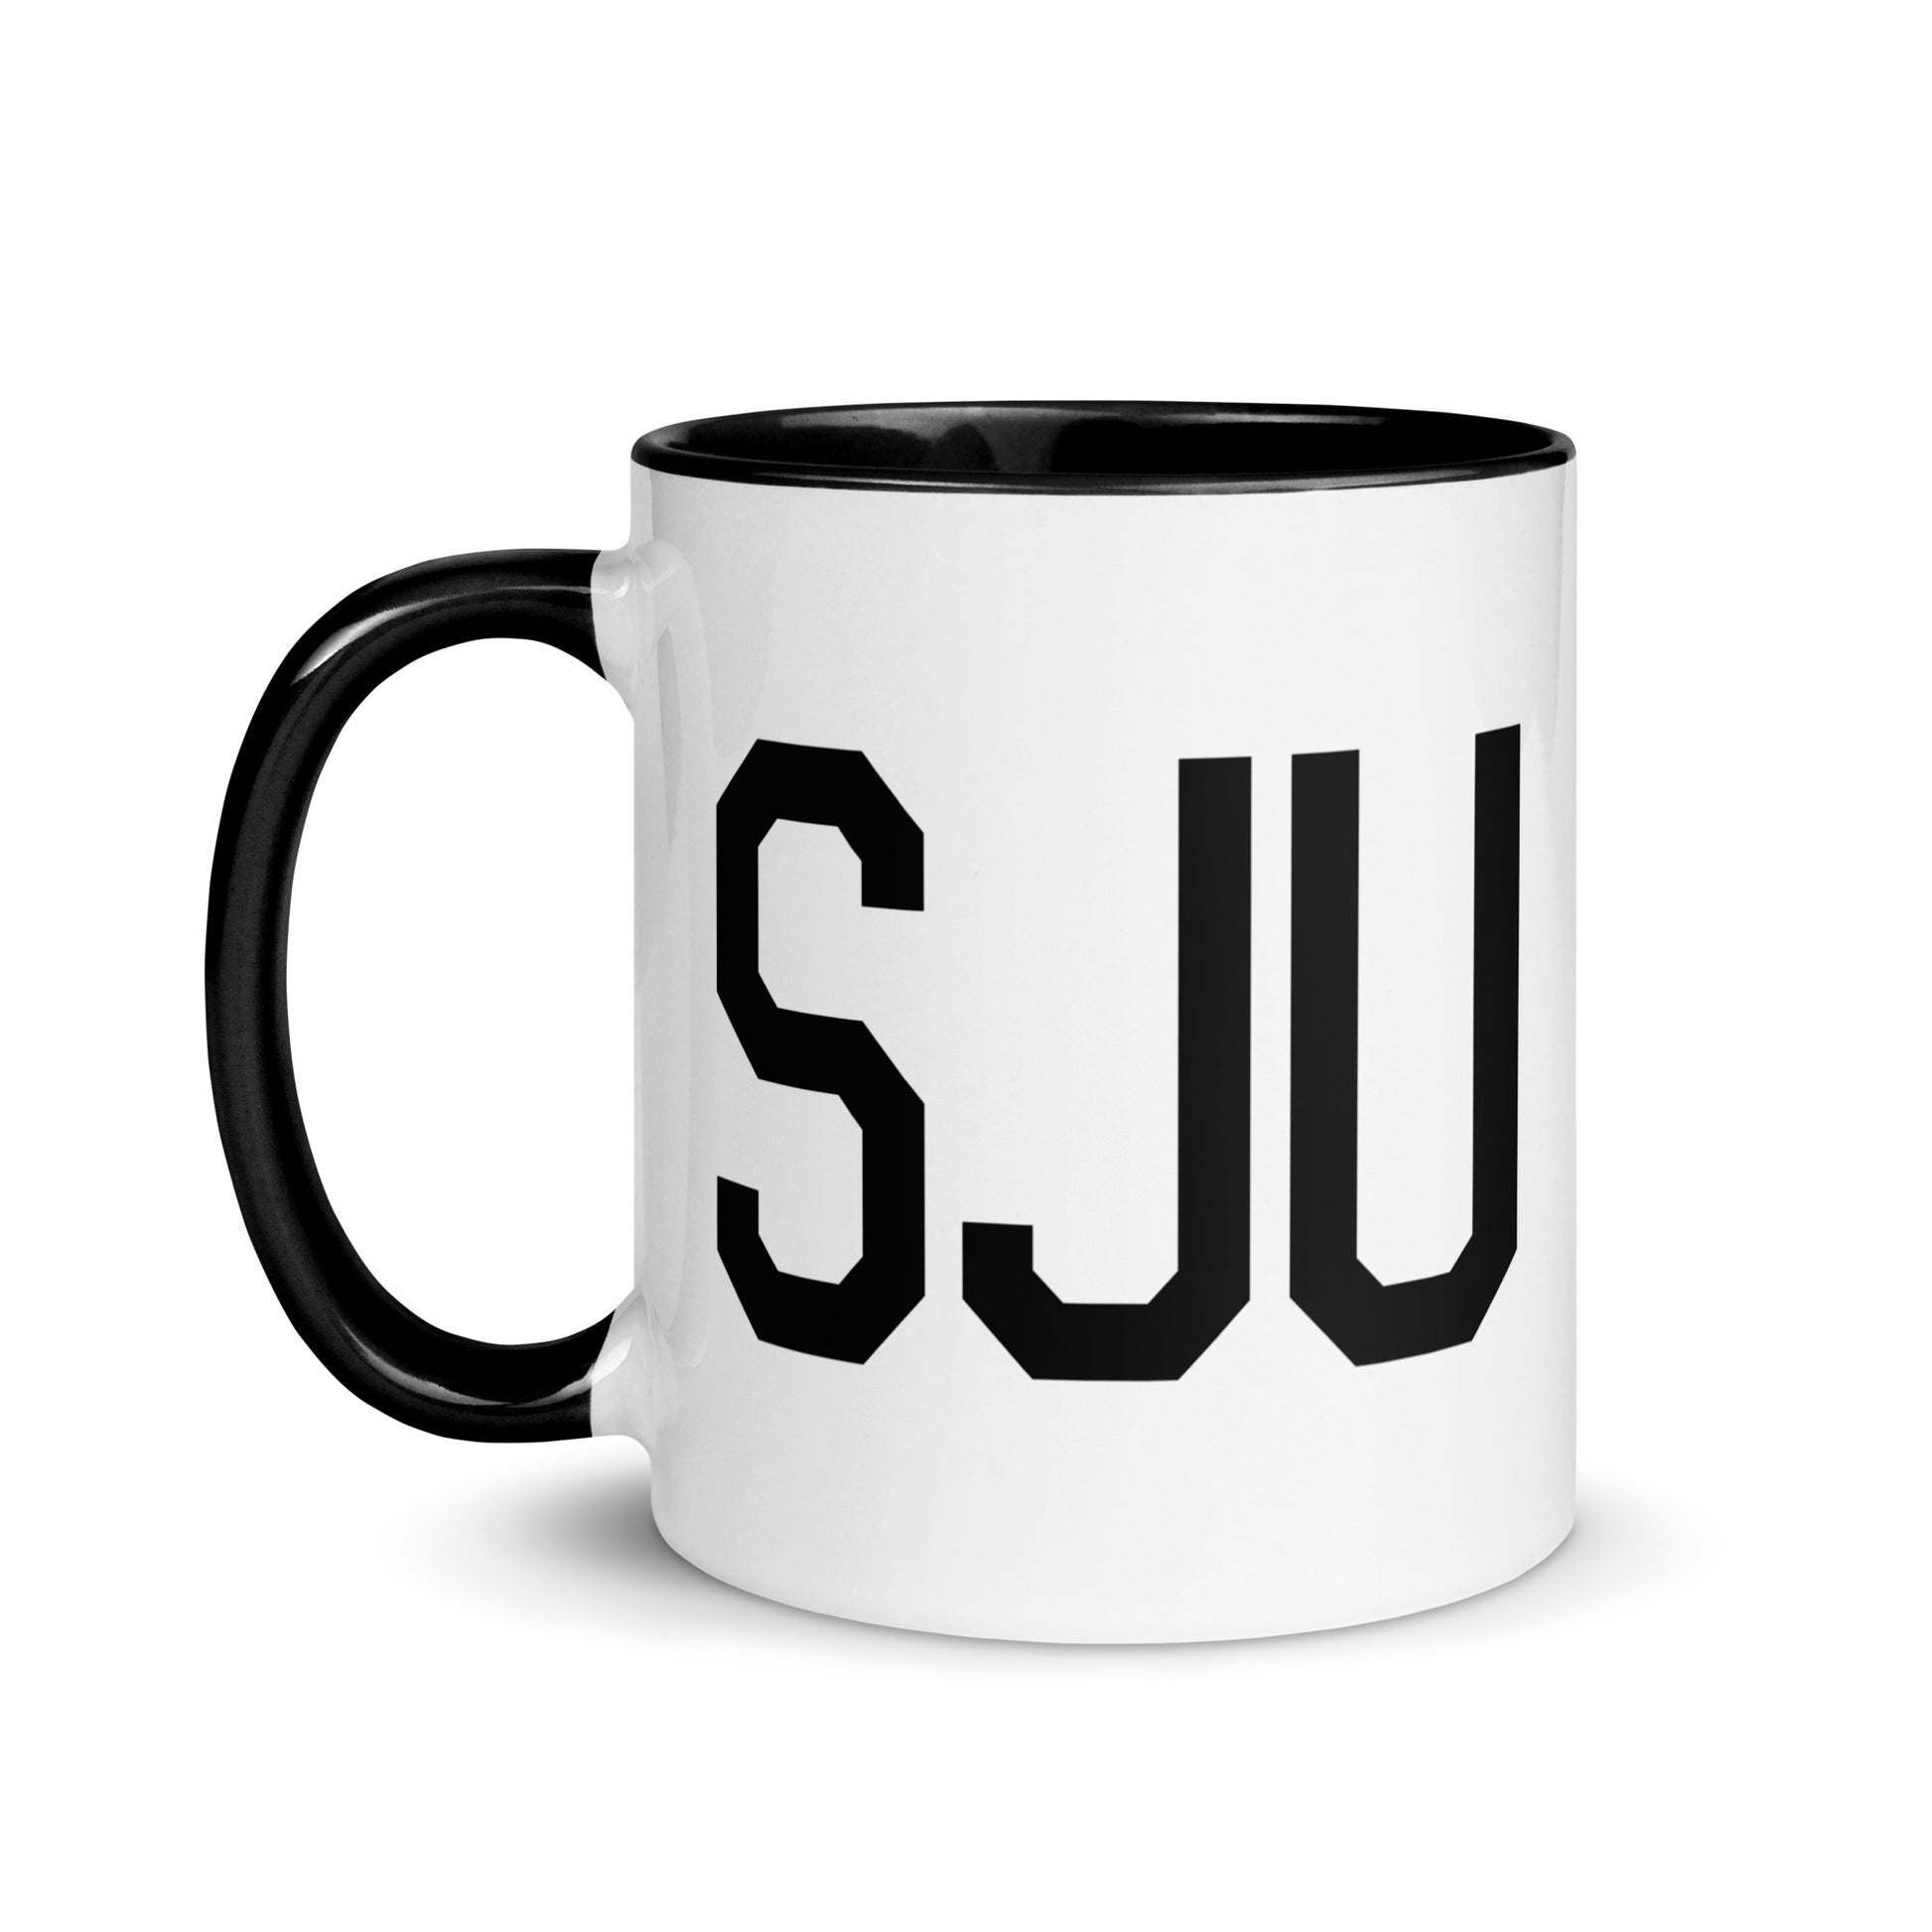 Aviation-Theme Coffee Mug - Black • SJU San Juan • YHM Designs - Image 03